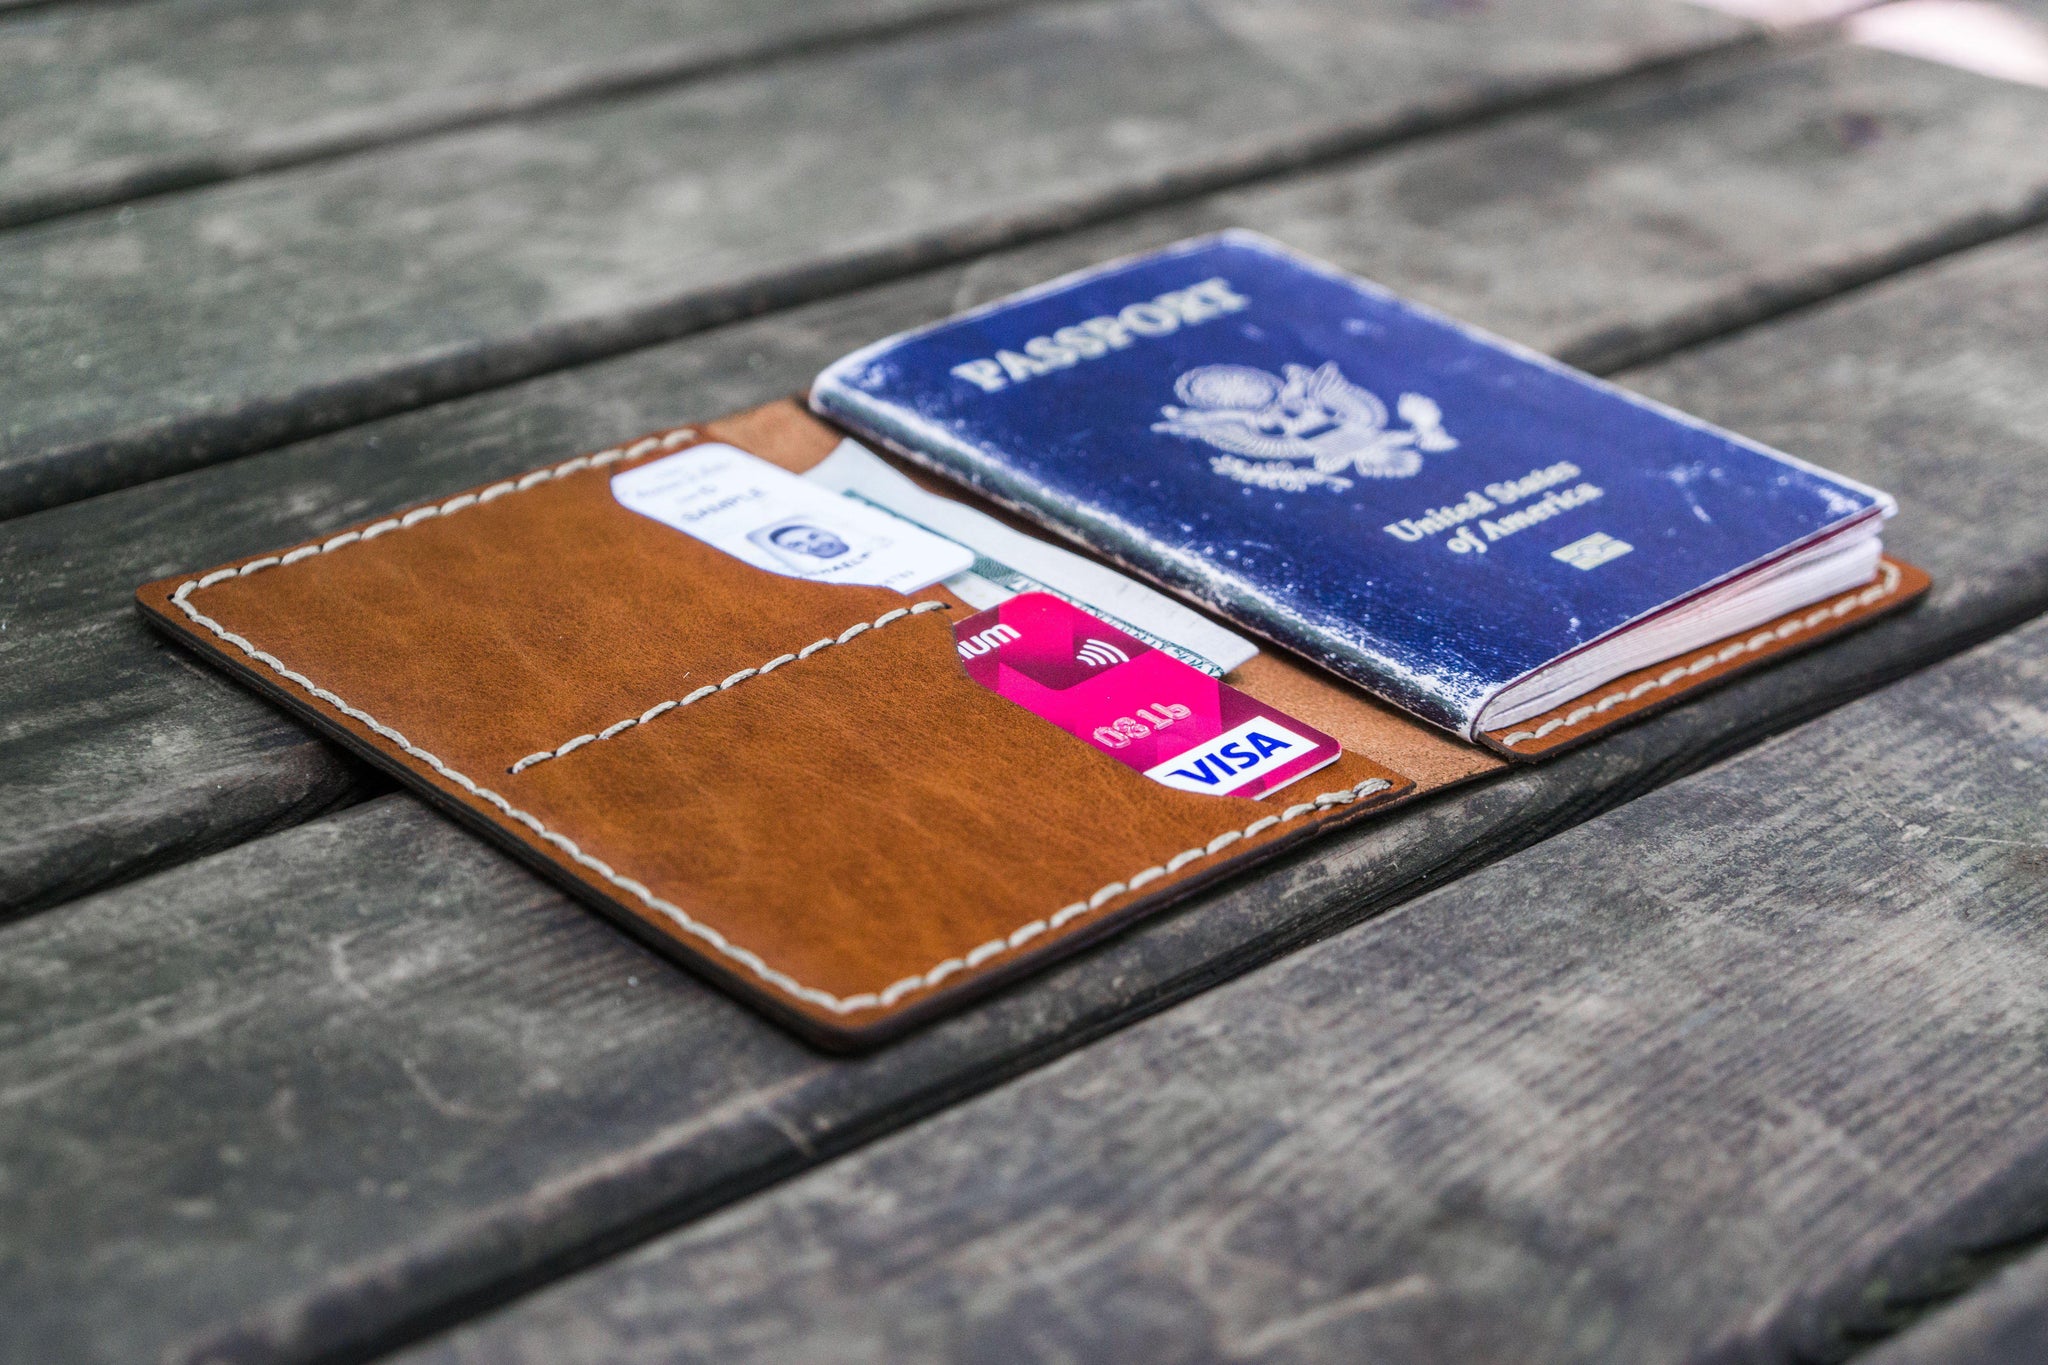 New! LORO PIANA Dark brown leather passport holder